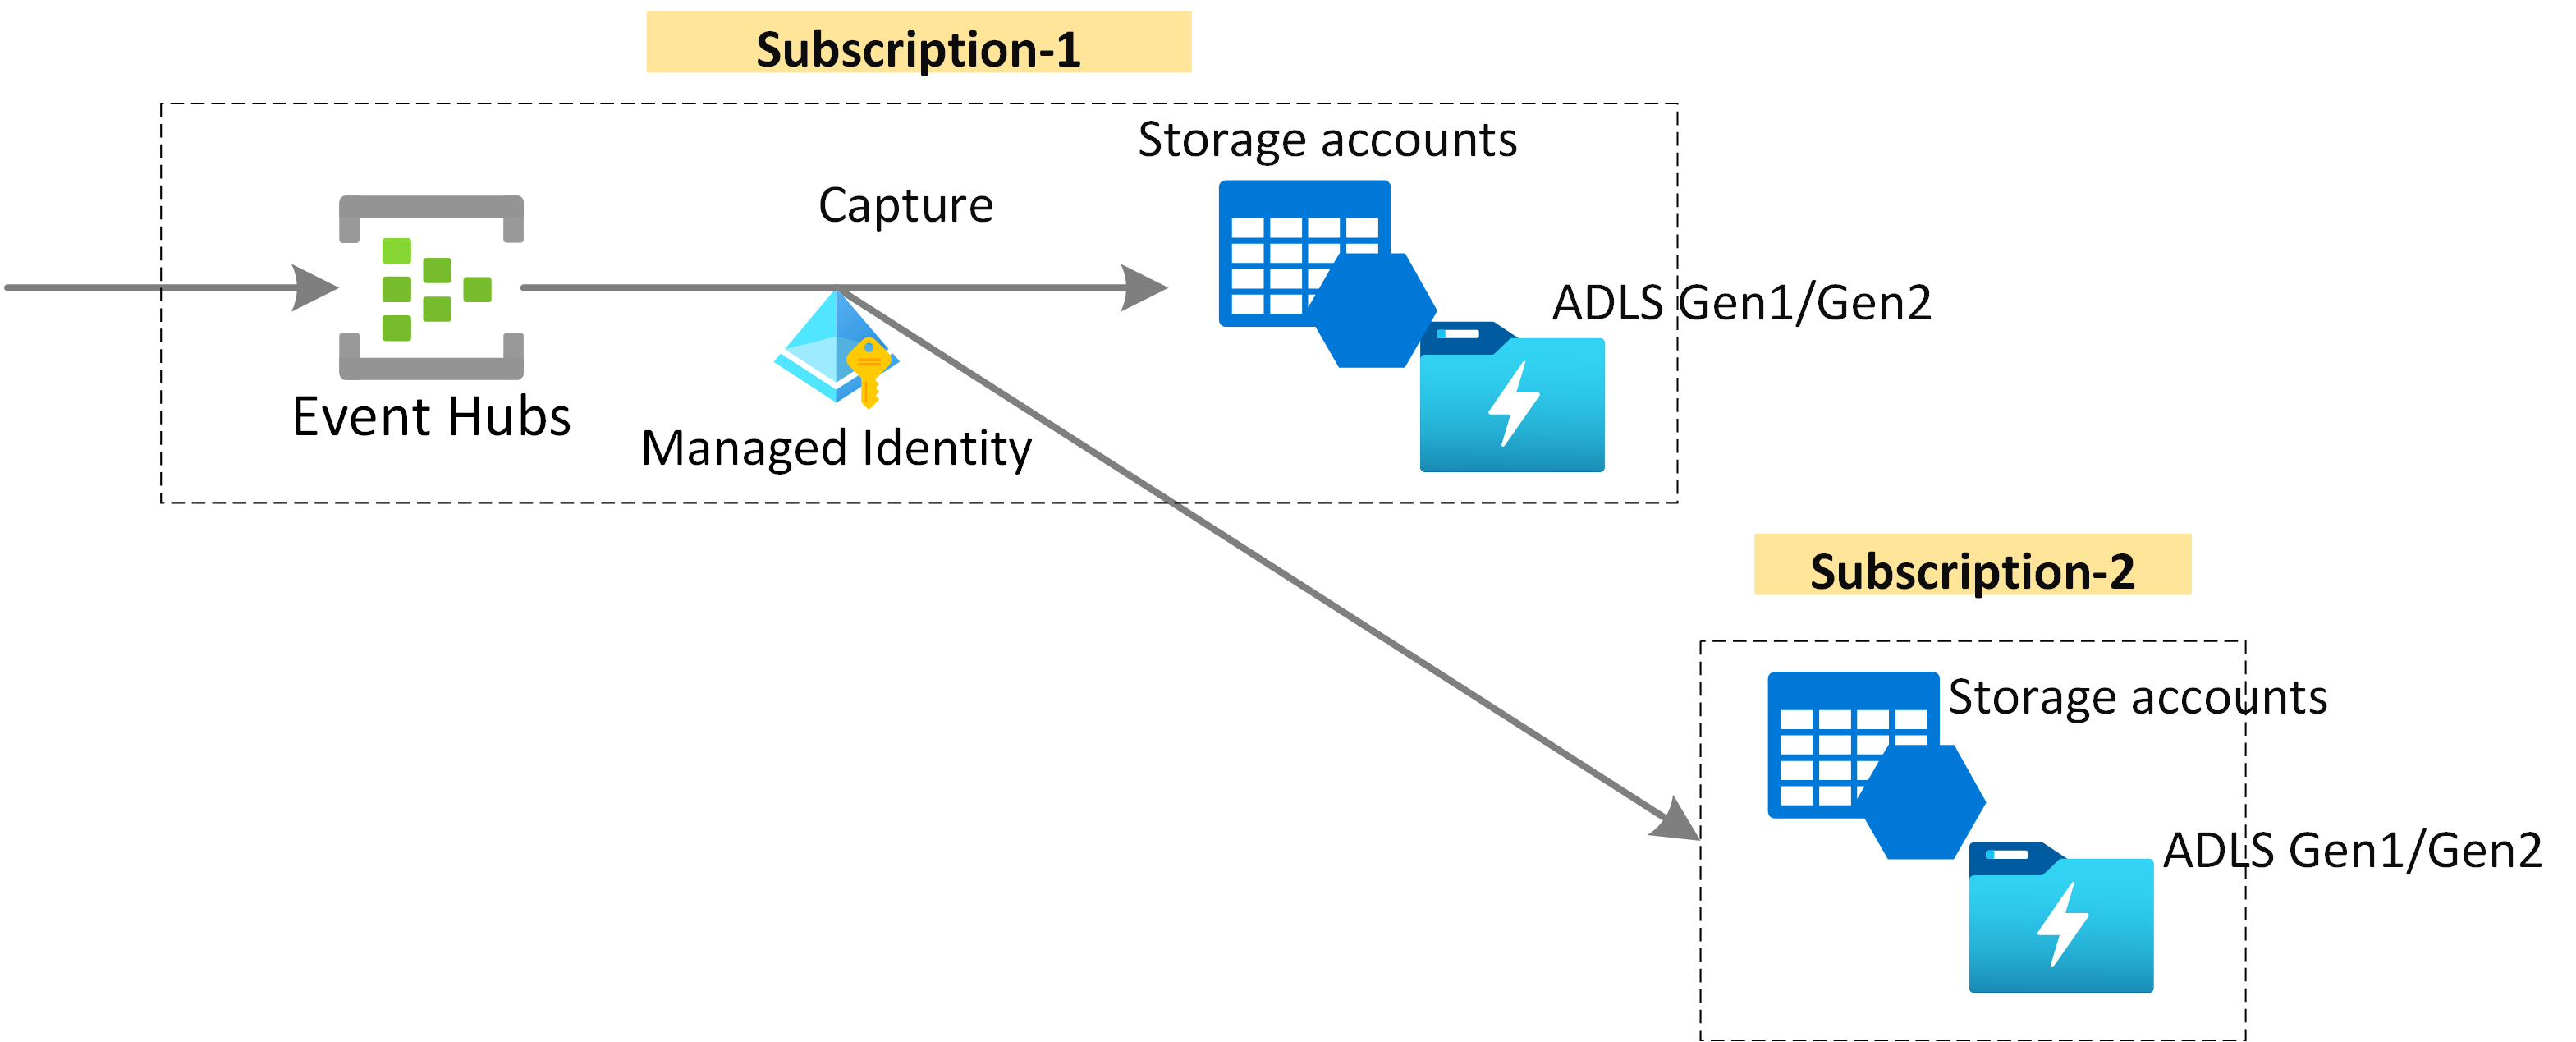 マネージド ID を使用した、Event Hubs データの Azure Storage または Azure Data Lake Storage へのキャプチャを示す図。